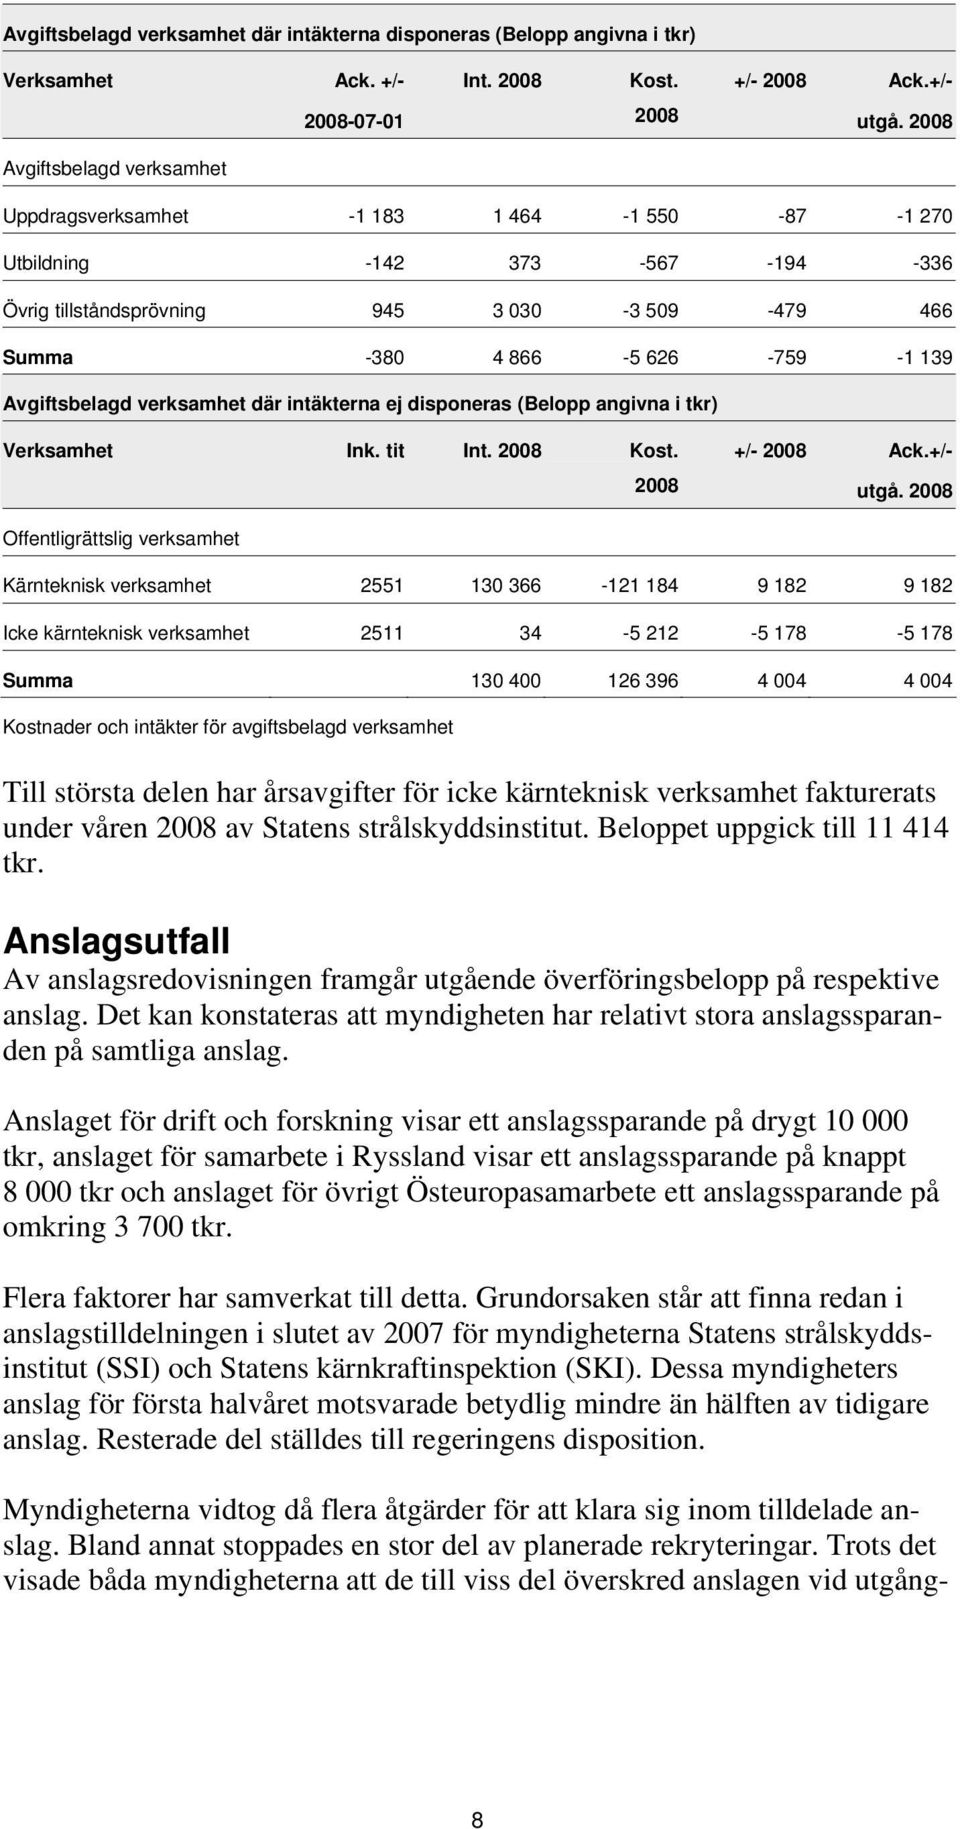 Avgiftsbelagd verksamhet där intäkterna ej disponeras (Belopp angivna i tkr) Verksamhet Ink. tit Int. 2008 Kost. 2008 +/- 2008 Ack.+/- utgå.